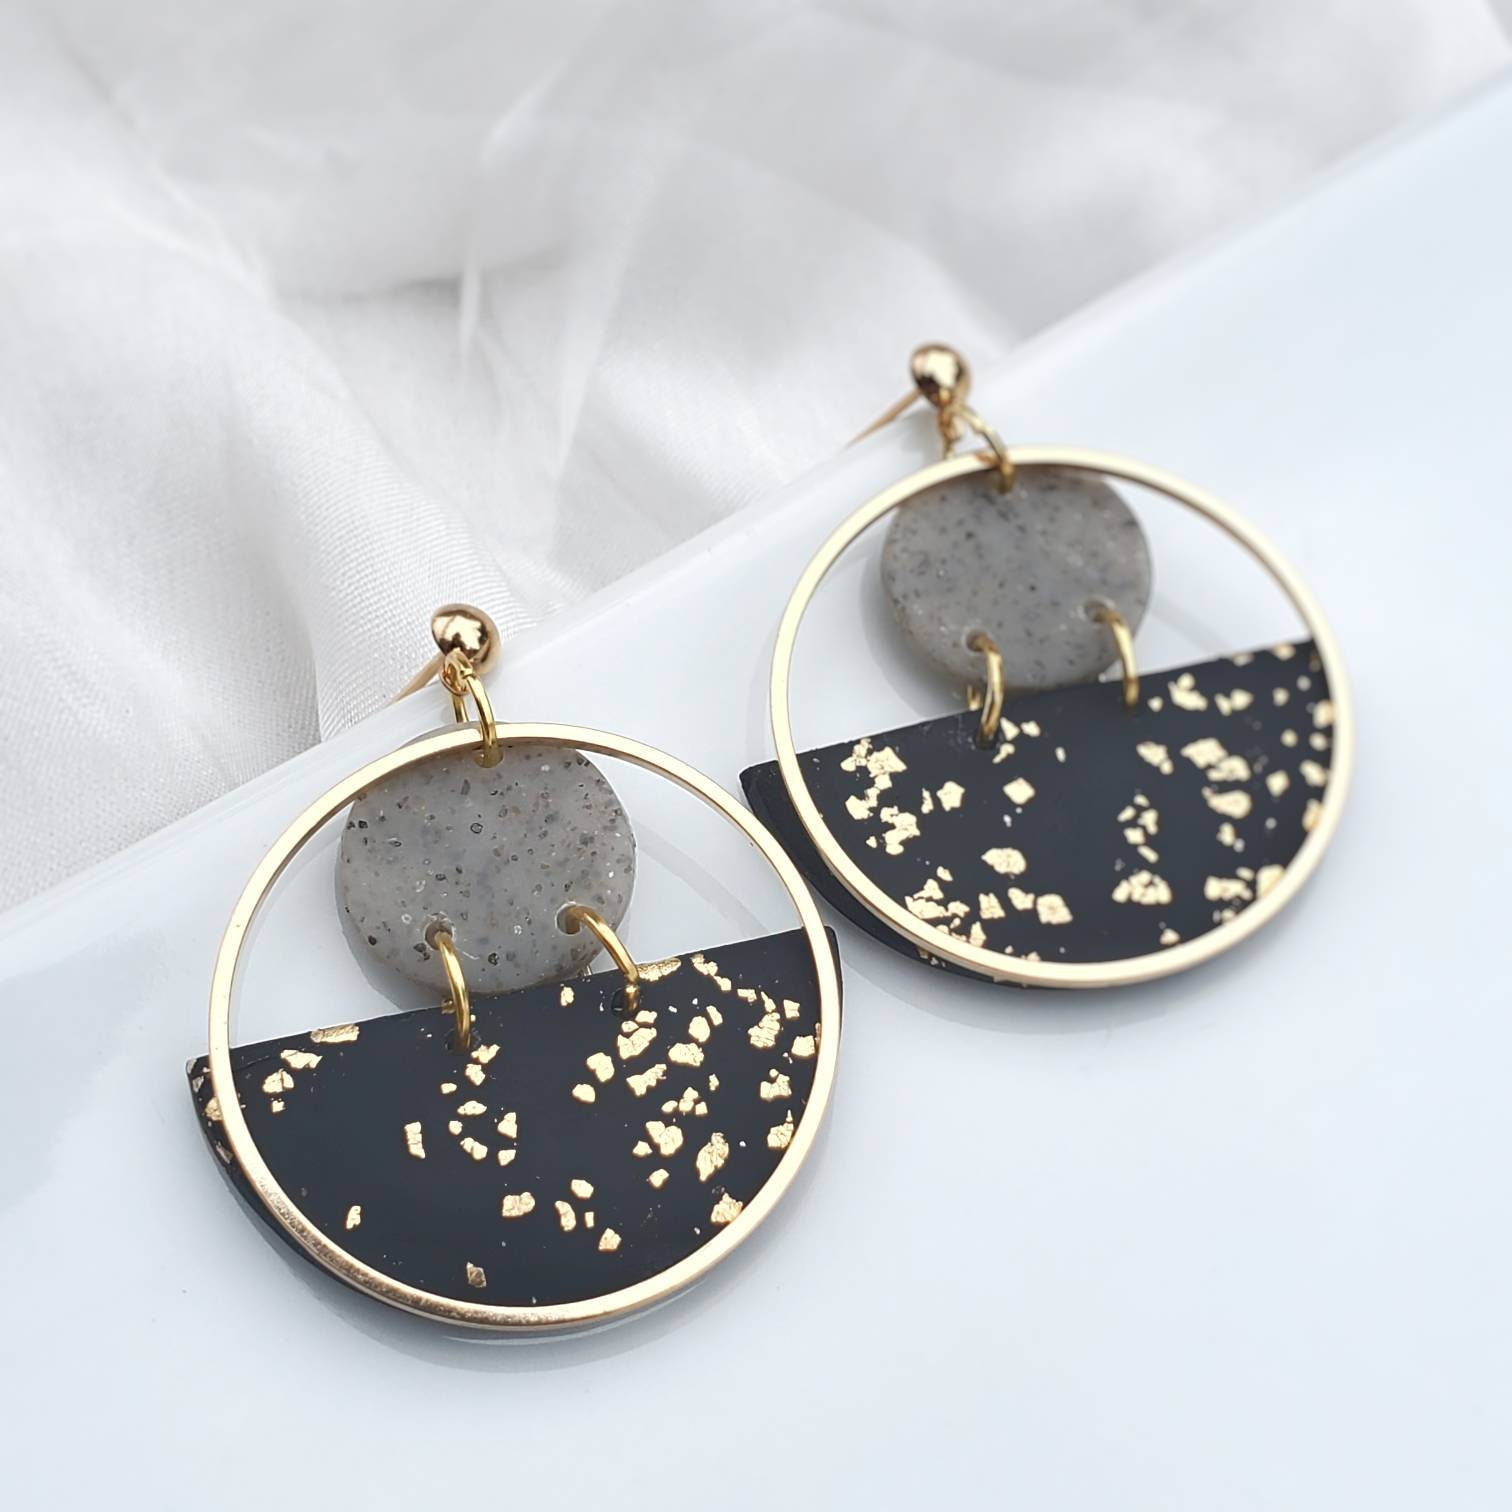 Black Jewelry Minimalist Jewelry and Earrings Statement Earrings Dangle Earrings Handmade Jewelry Black Polymer Clay Earrings